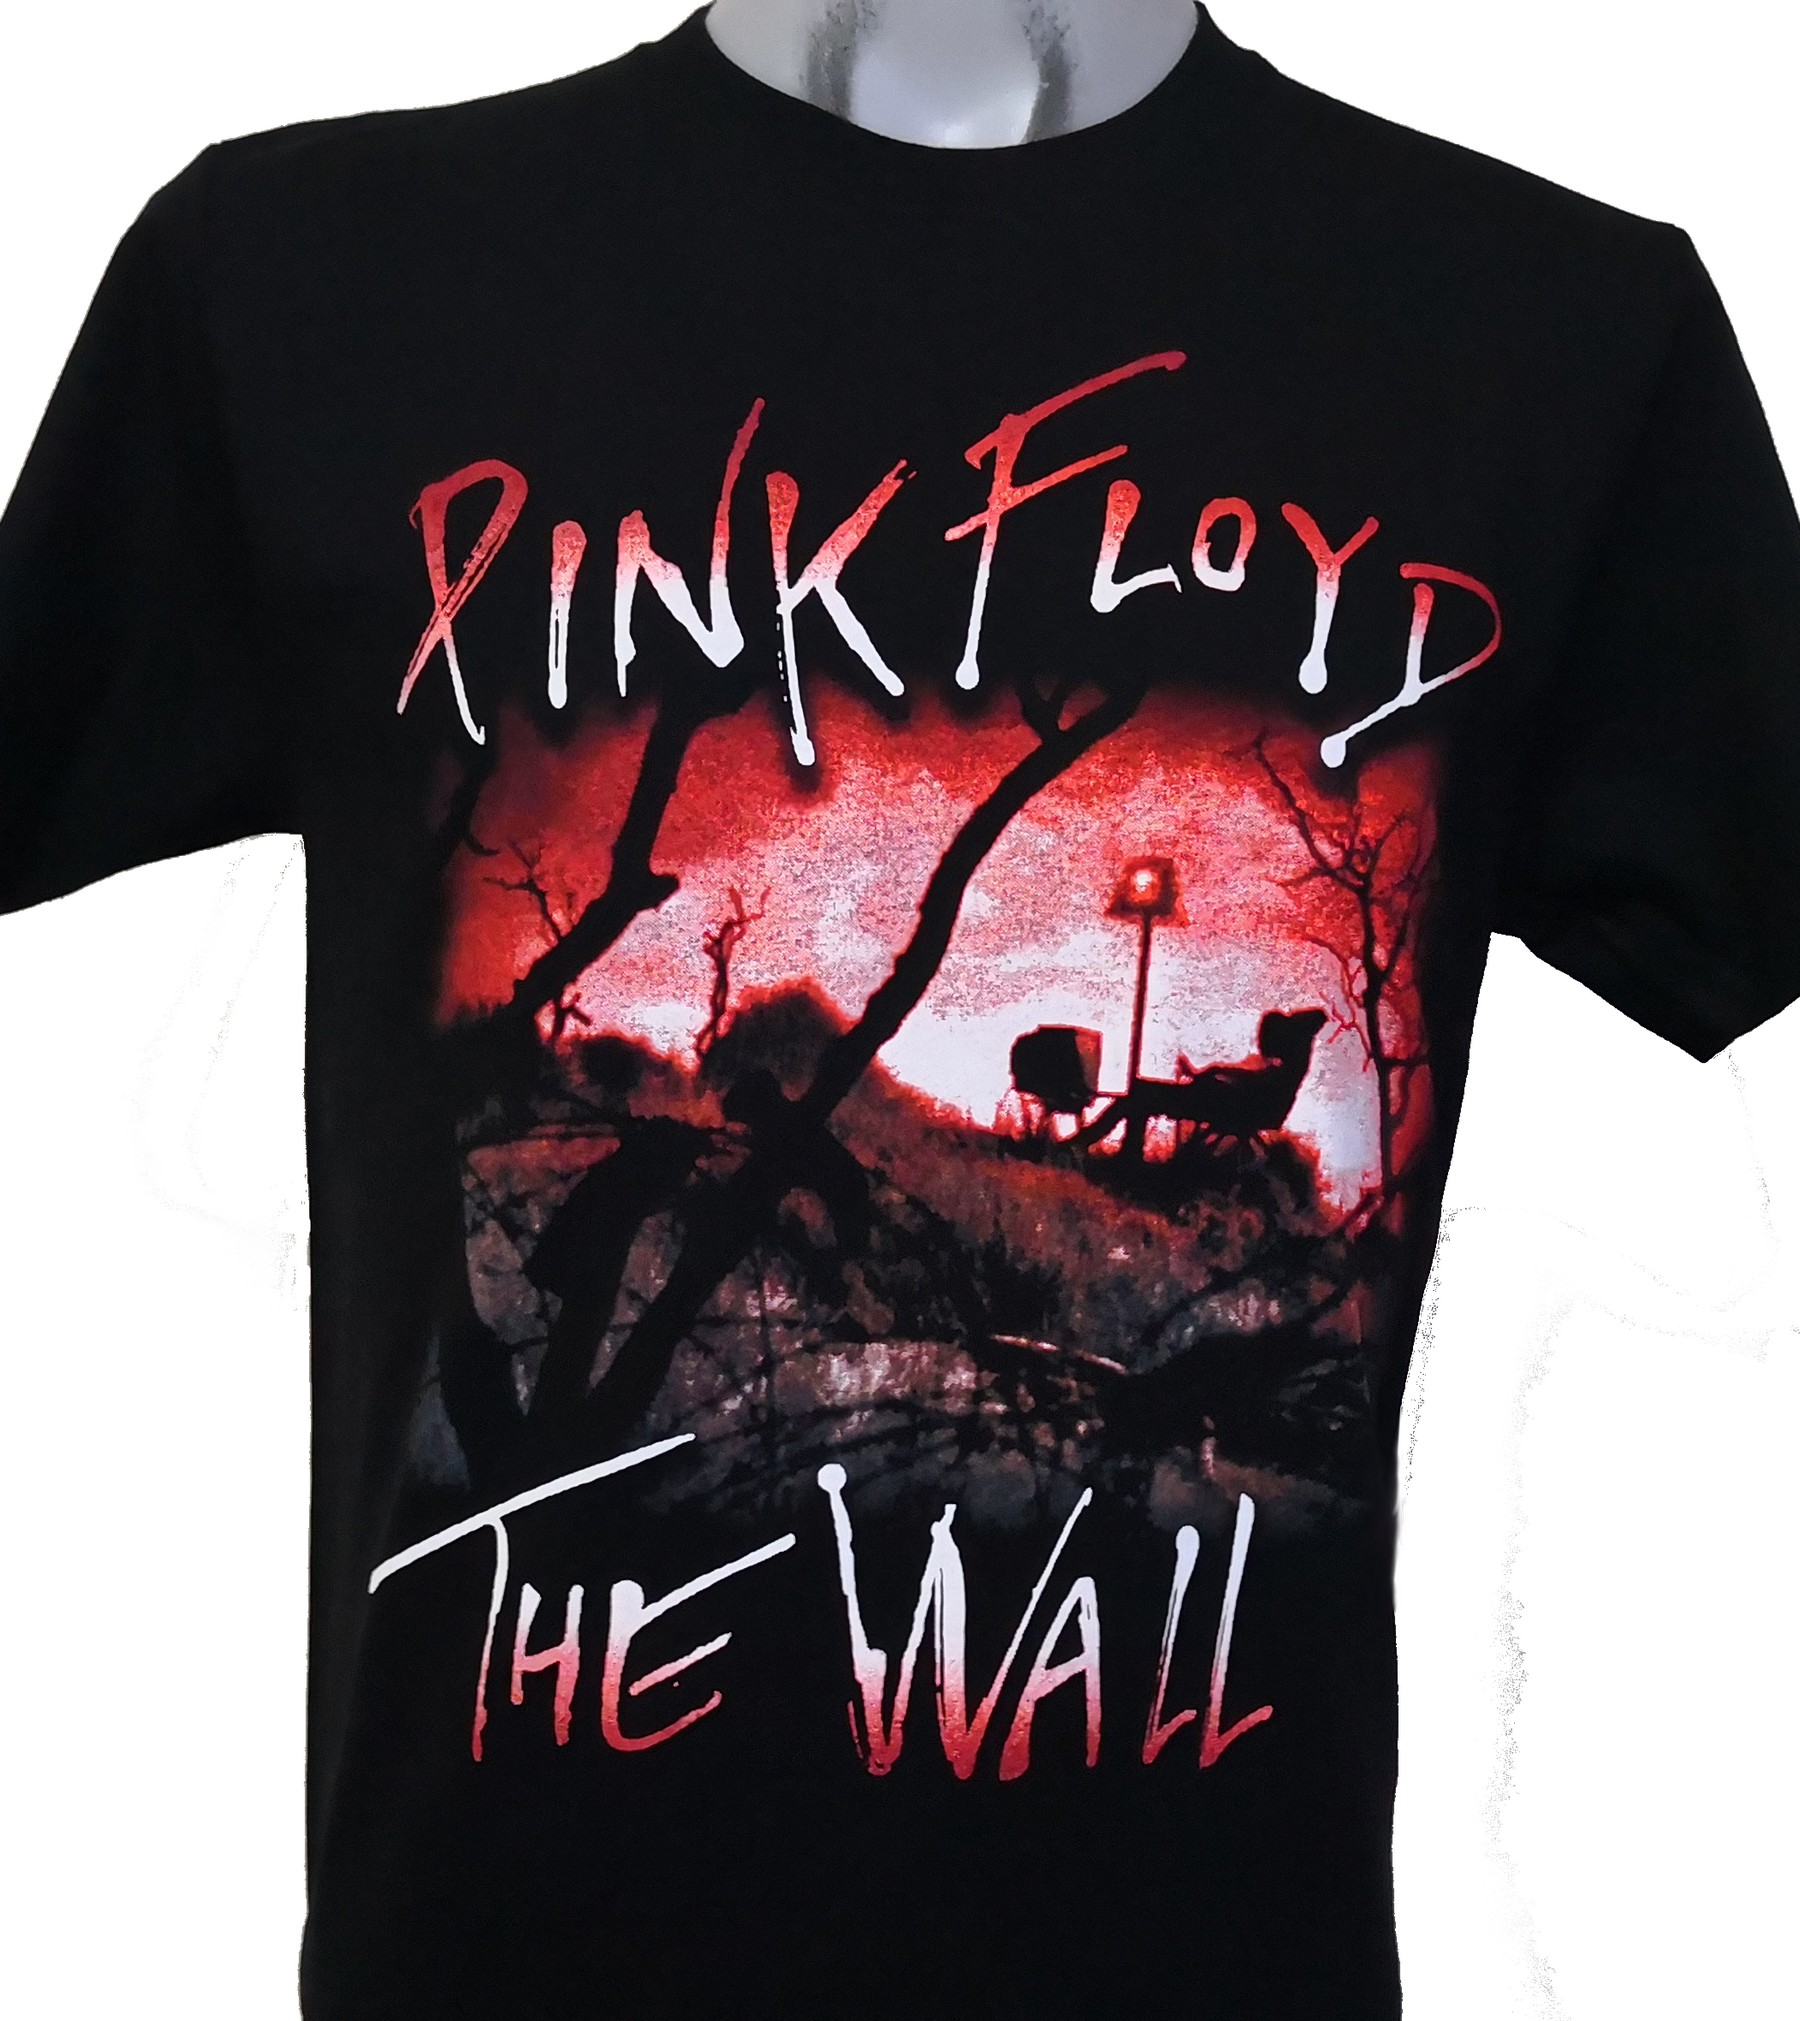 pink Floyd xl Tシャツ